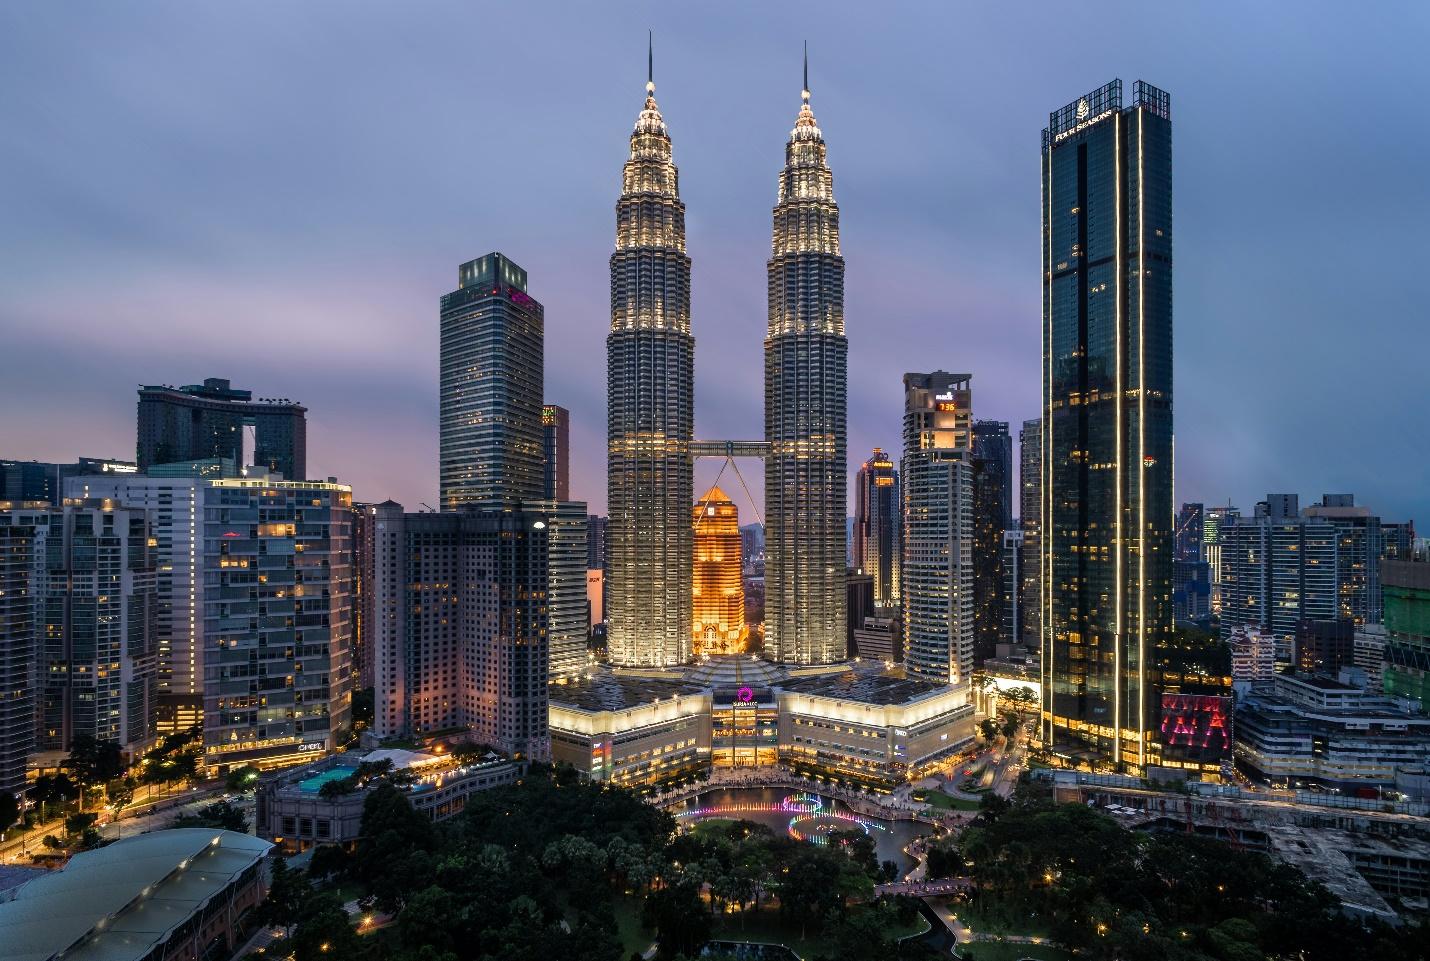 Malaysia skyline